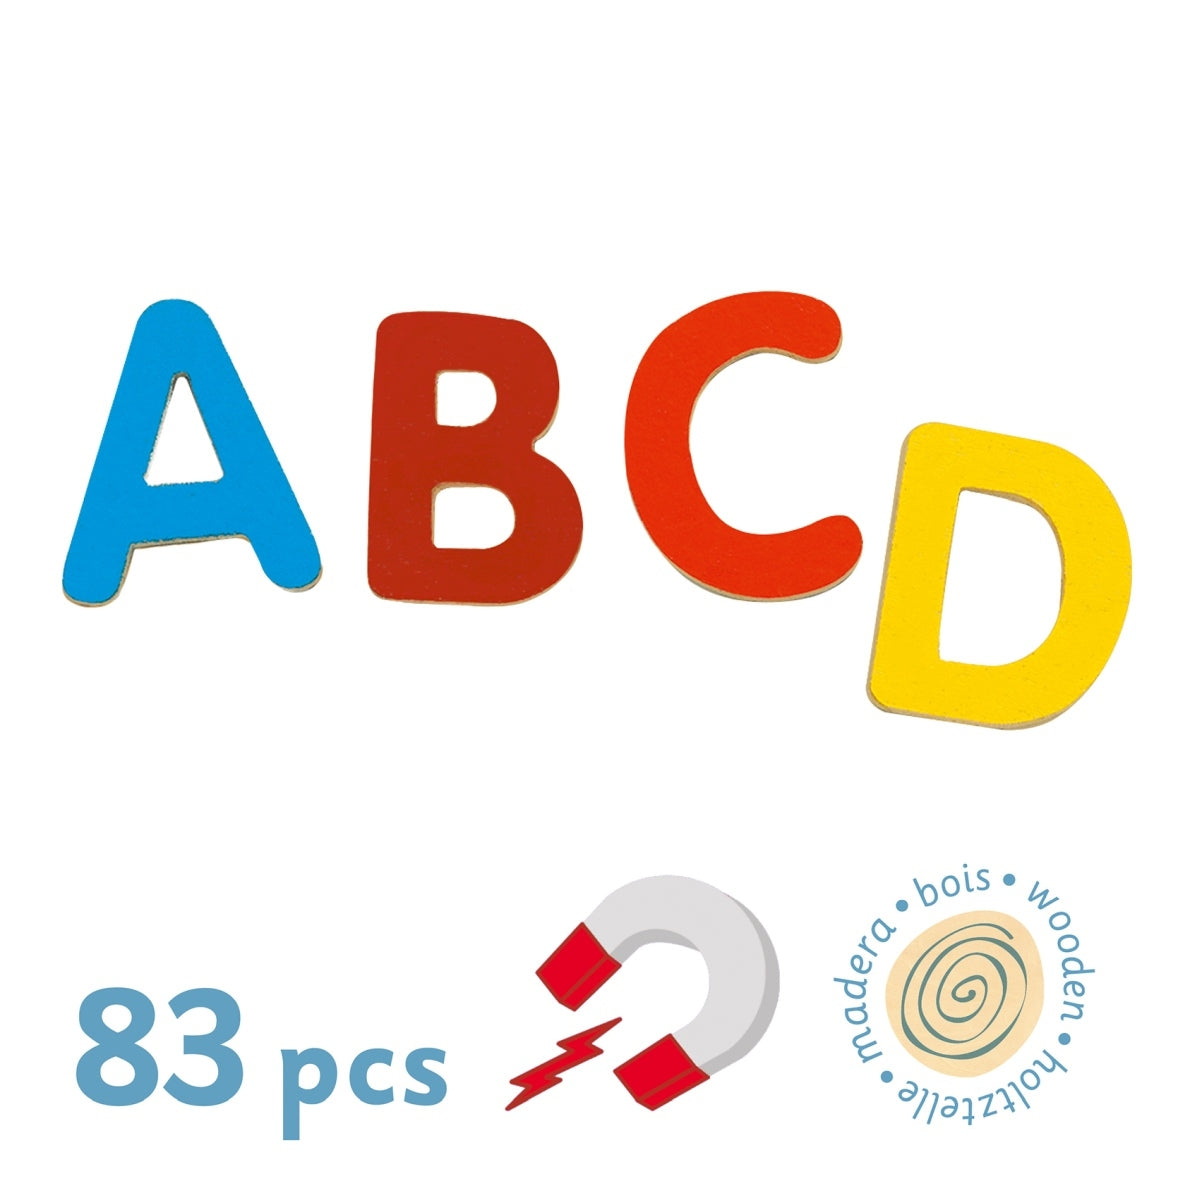 Mit dem Magnetspiel 83 SMALL LETTERS in bunt von Djeco lernen Kinder ab 4 Jahren spielerisch das Alphabet. Die einzelnen Buchstaben sind stabil aus Holz gefertigt, jeweils etwa 3 cm groß und bunt lackiert. Die kindliche Aufmachung regt immer wieder das Interesse an. So animiert das Holz-ABC dazu, erste Worte zu lernen und zu legen - auch am Kühlschrank oder einer Magnettafel. 